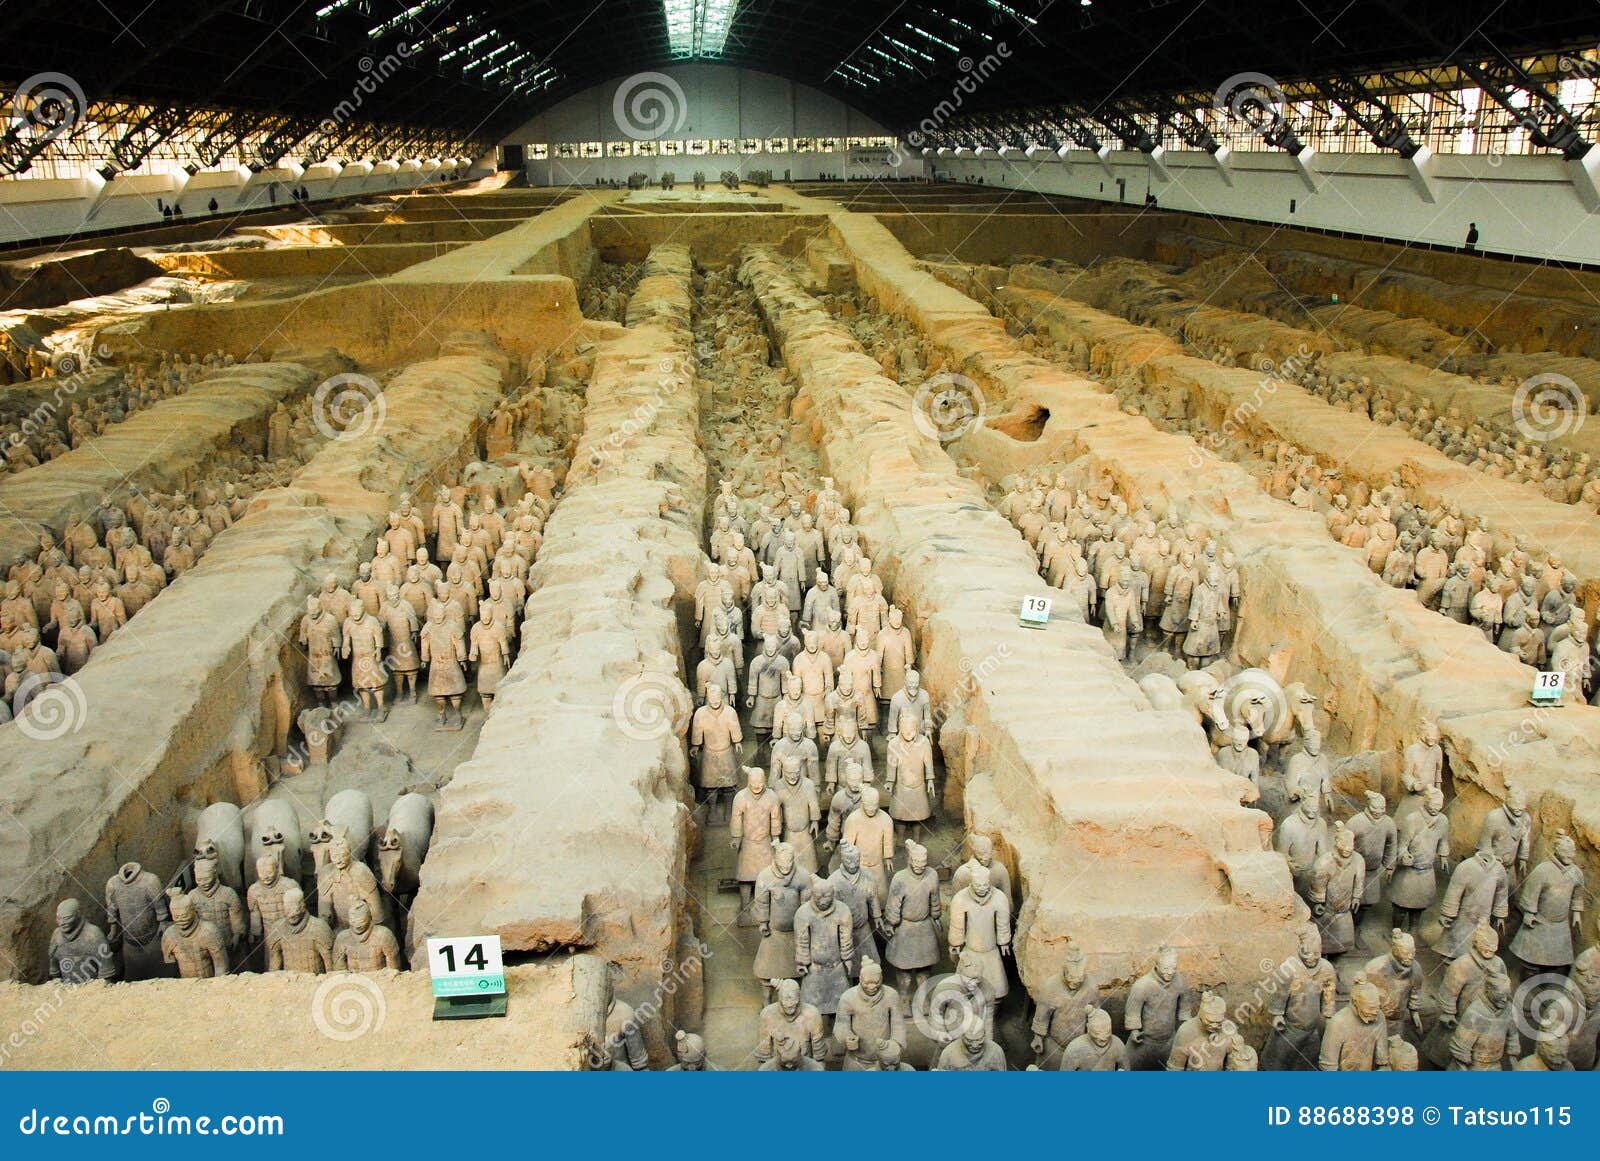 Армия терракоты в мавзолее первого императора Qin в Xian, Китае X ` ian столица старого Китая